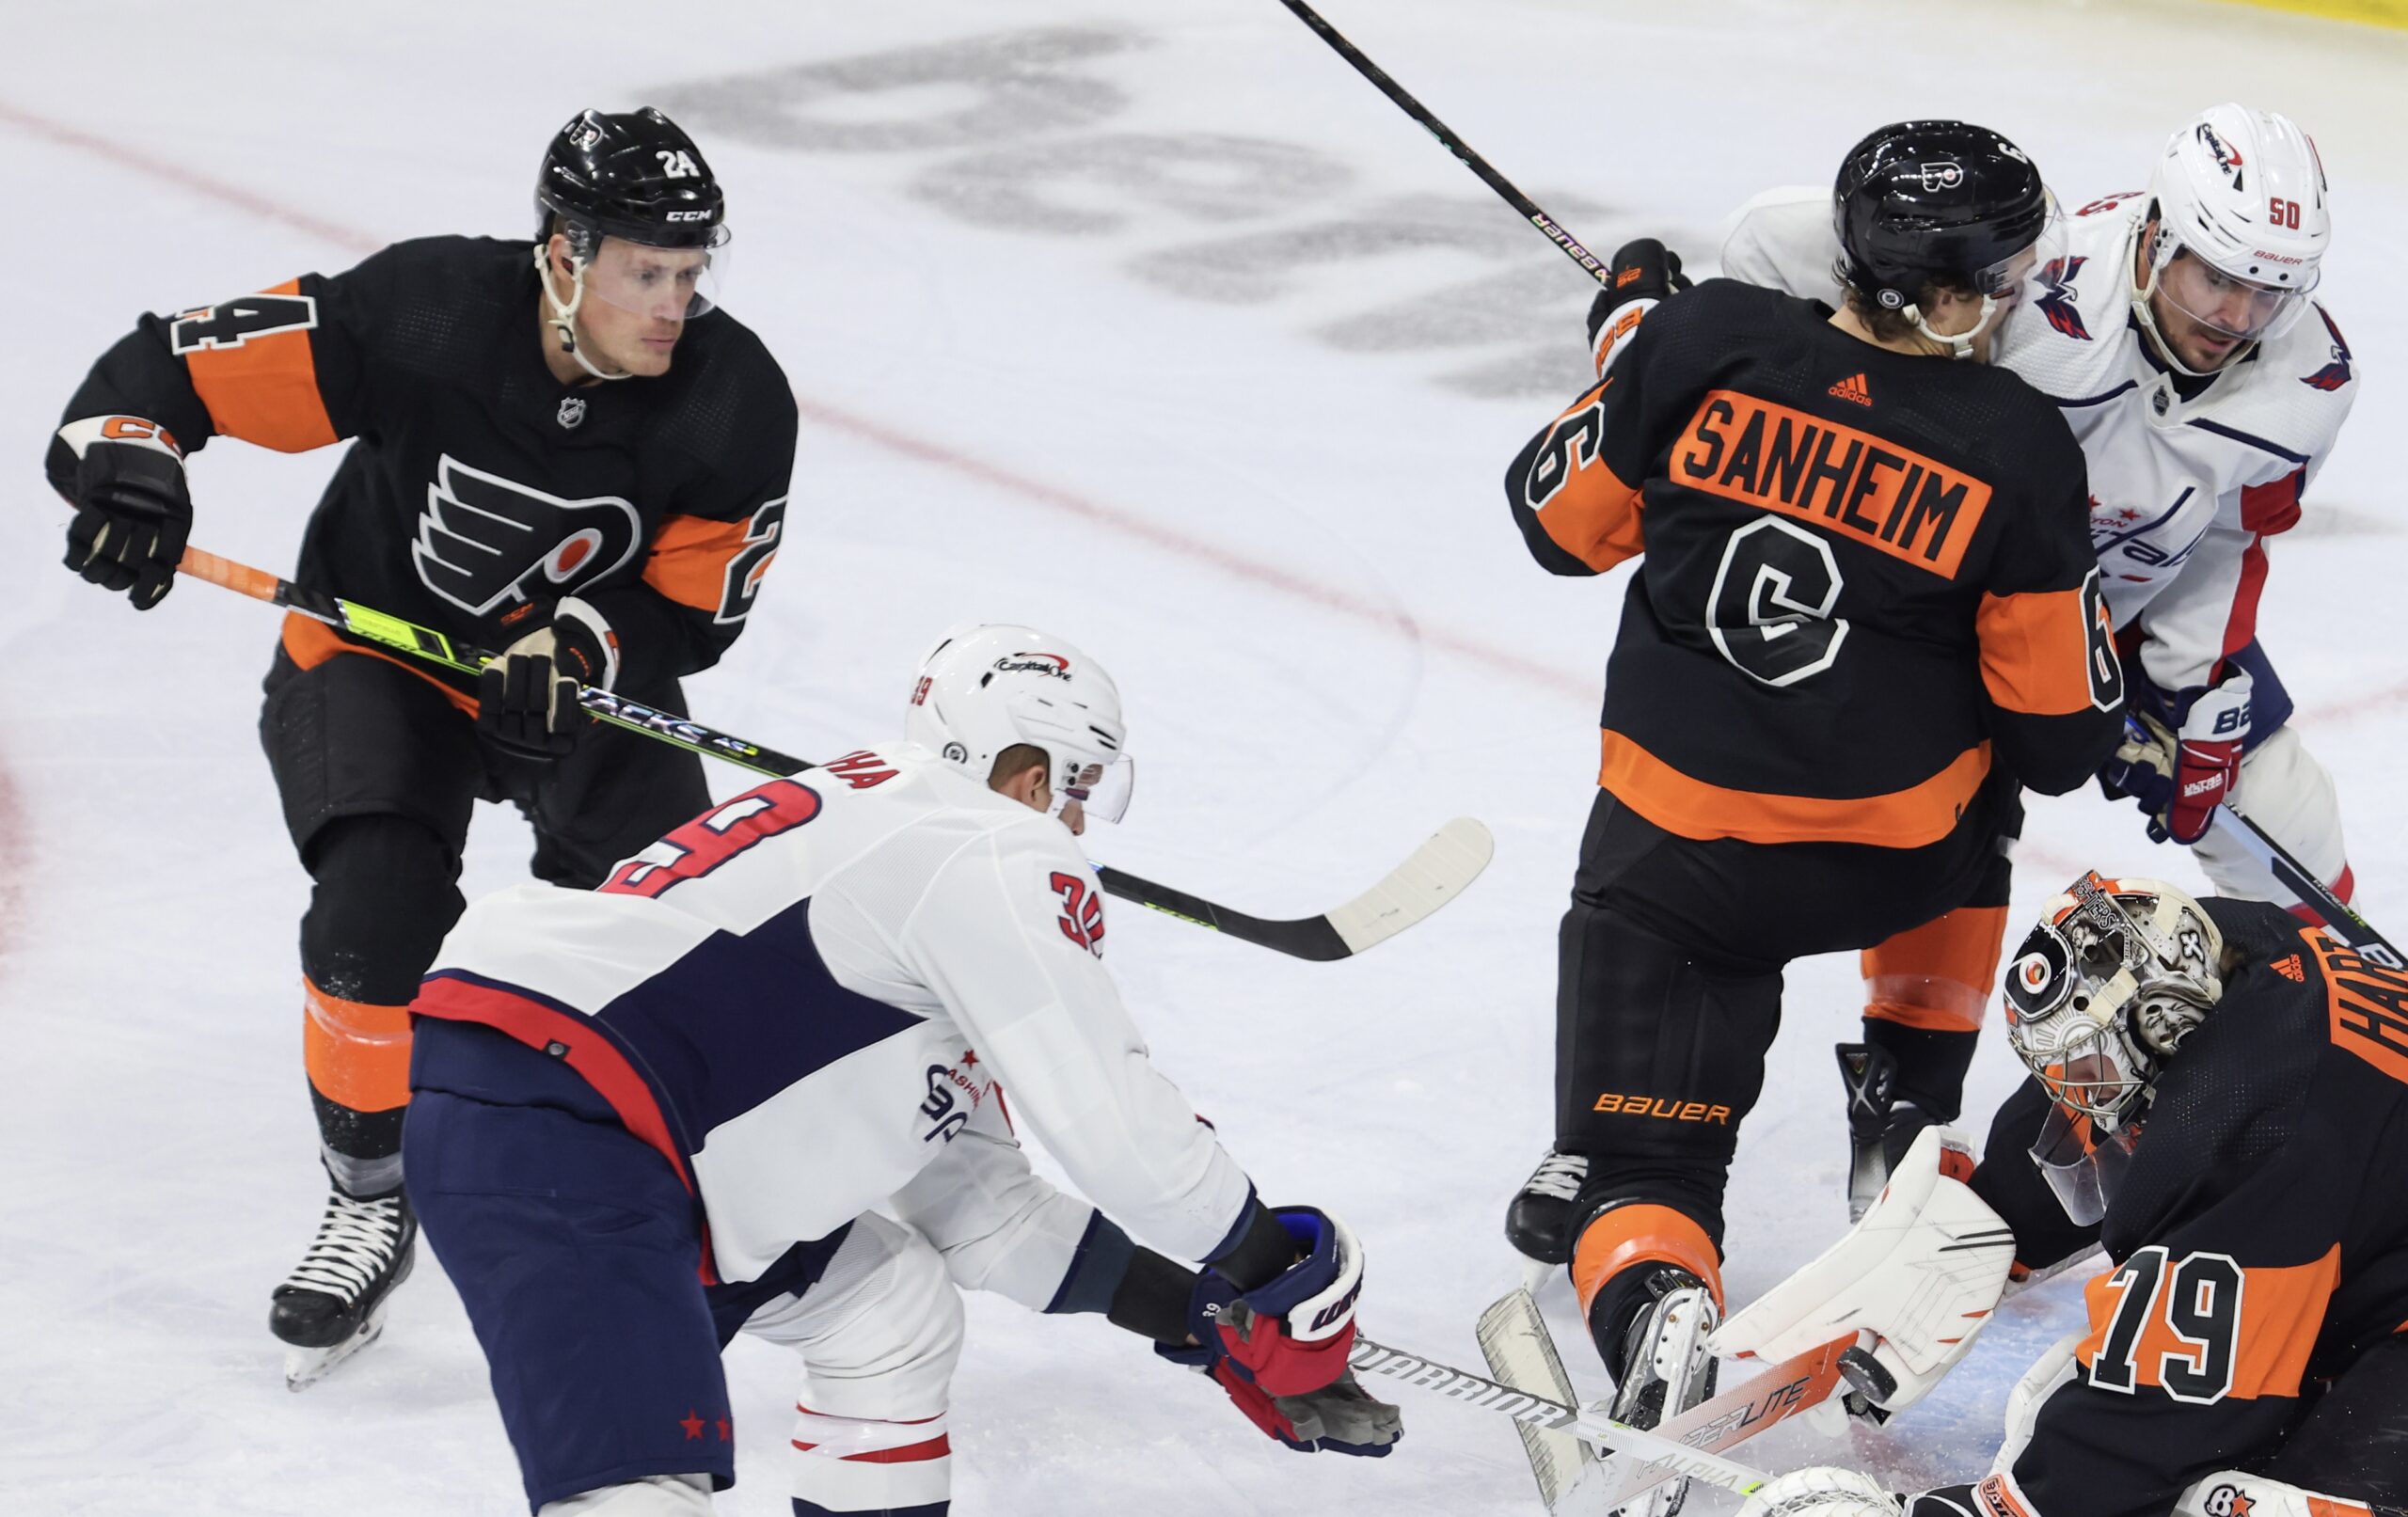 Ivan Provorov Signed Philadelphia Flyers 2019 Stadium Series